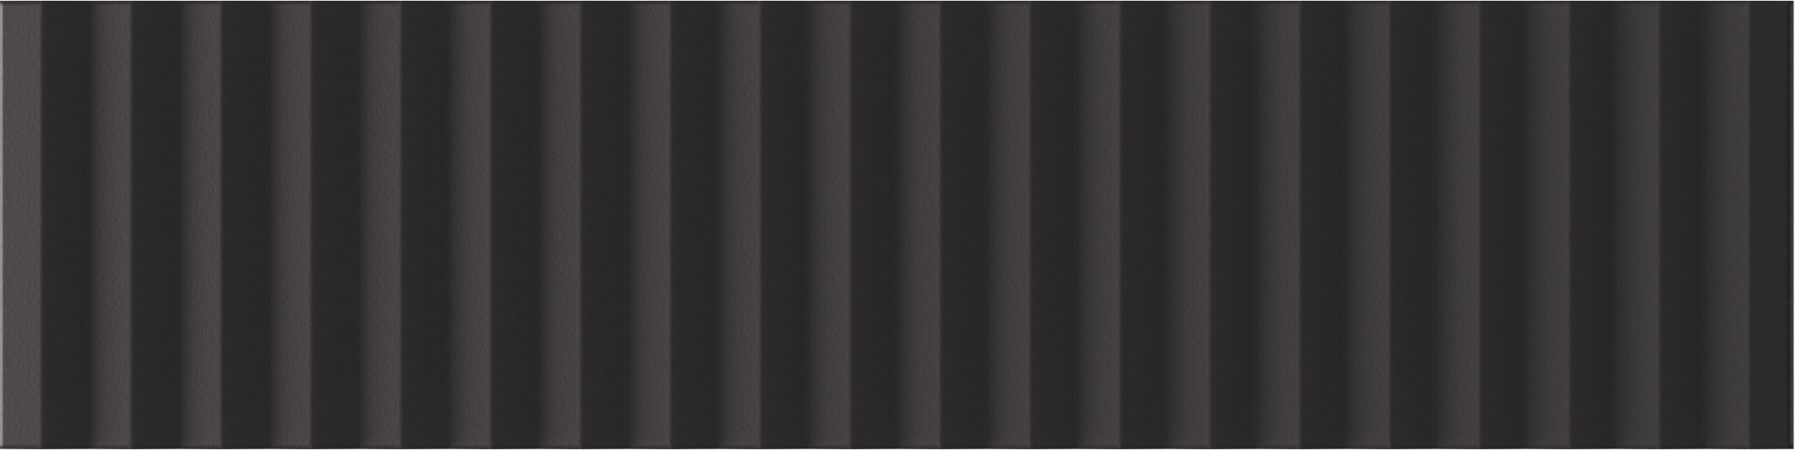 Керамическая плитка Wow Twin Peaks Med Nero 131555, цвет чёрный, поверхность матовая 3d (объёмная), под кирпич, 75x300